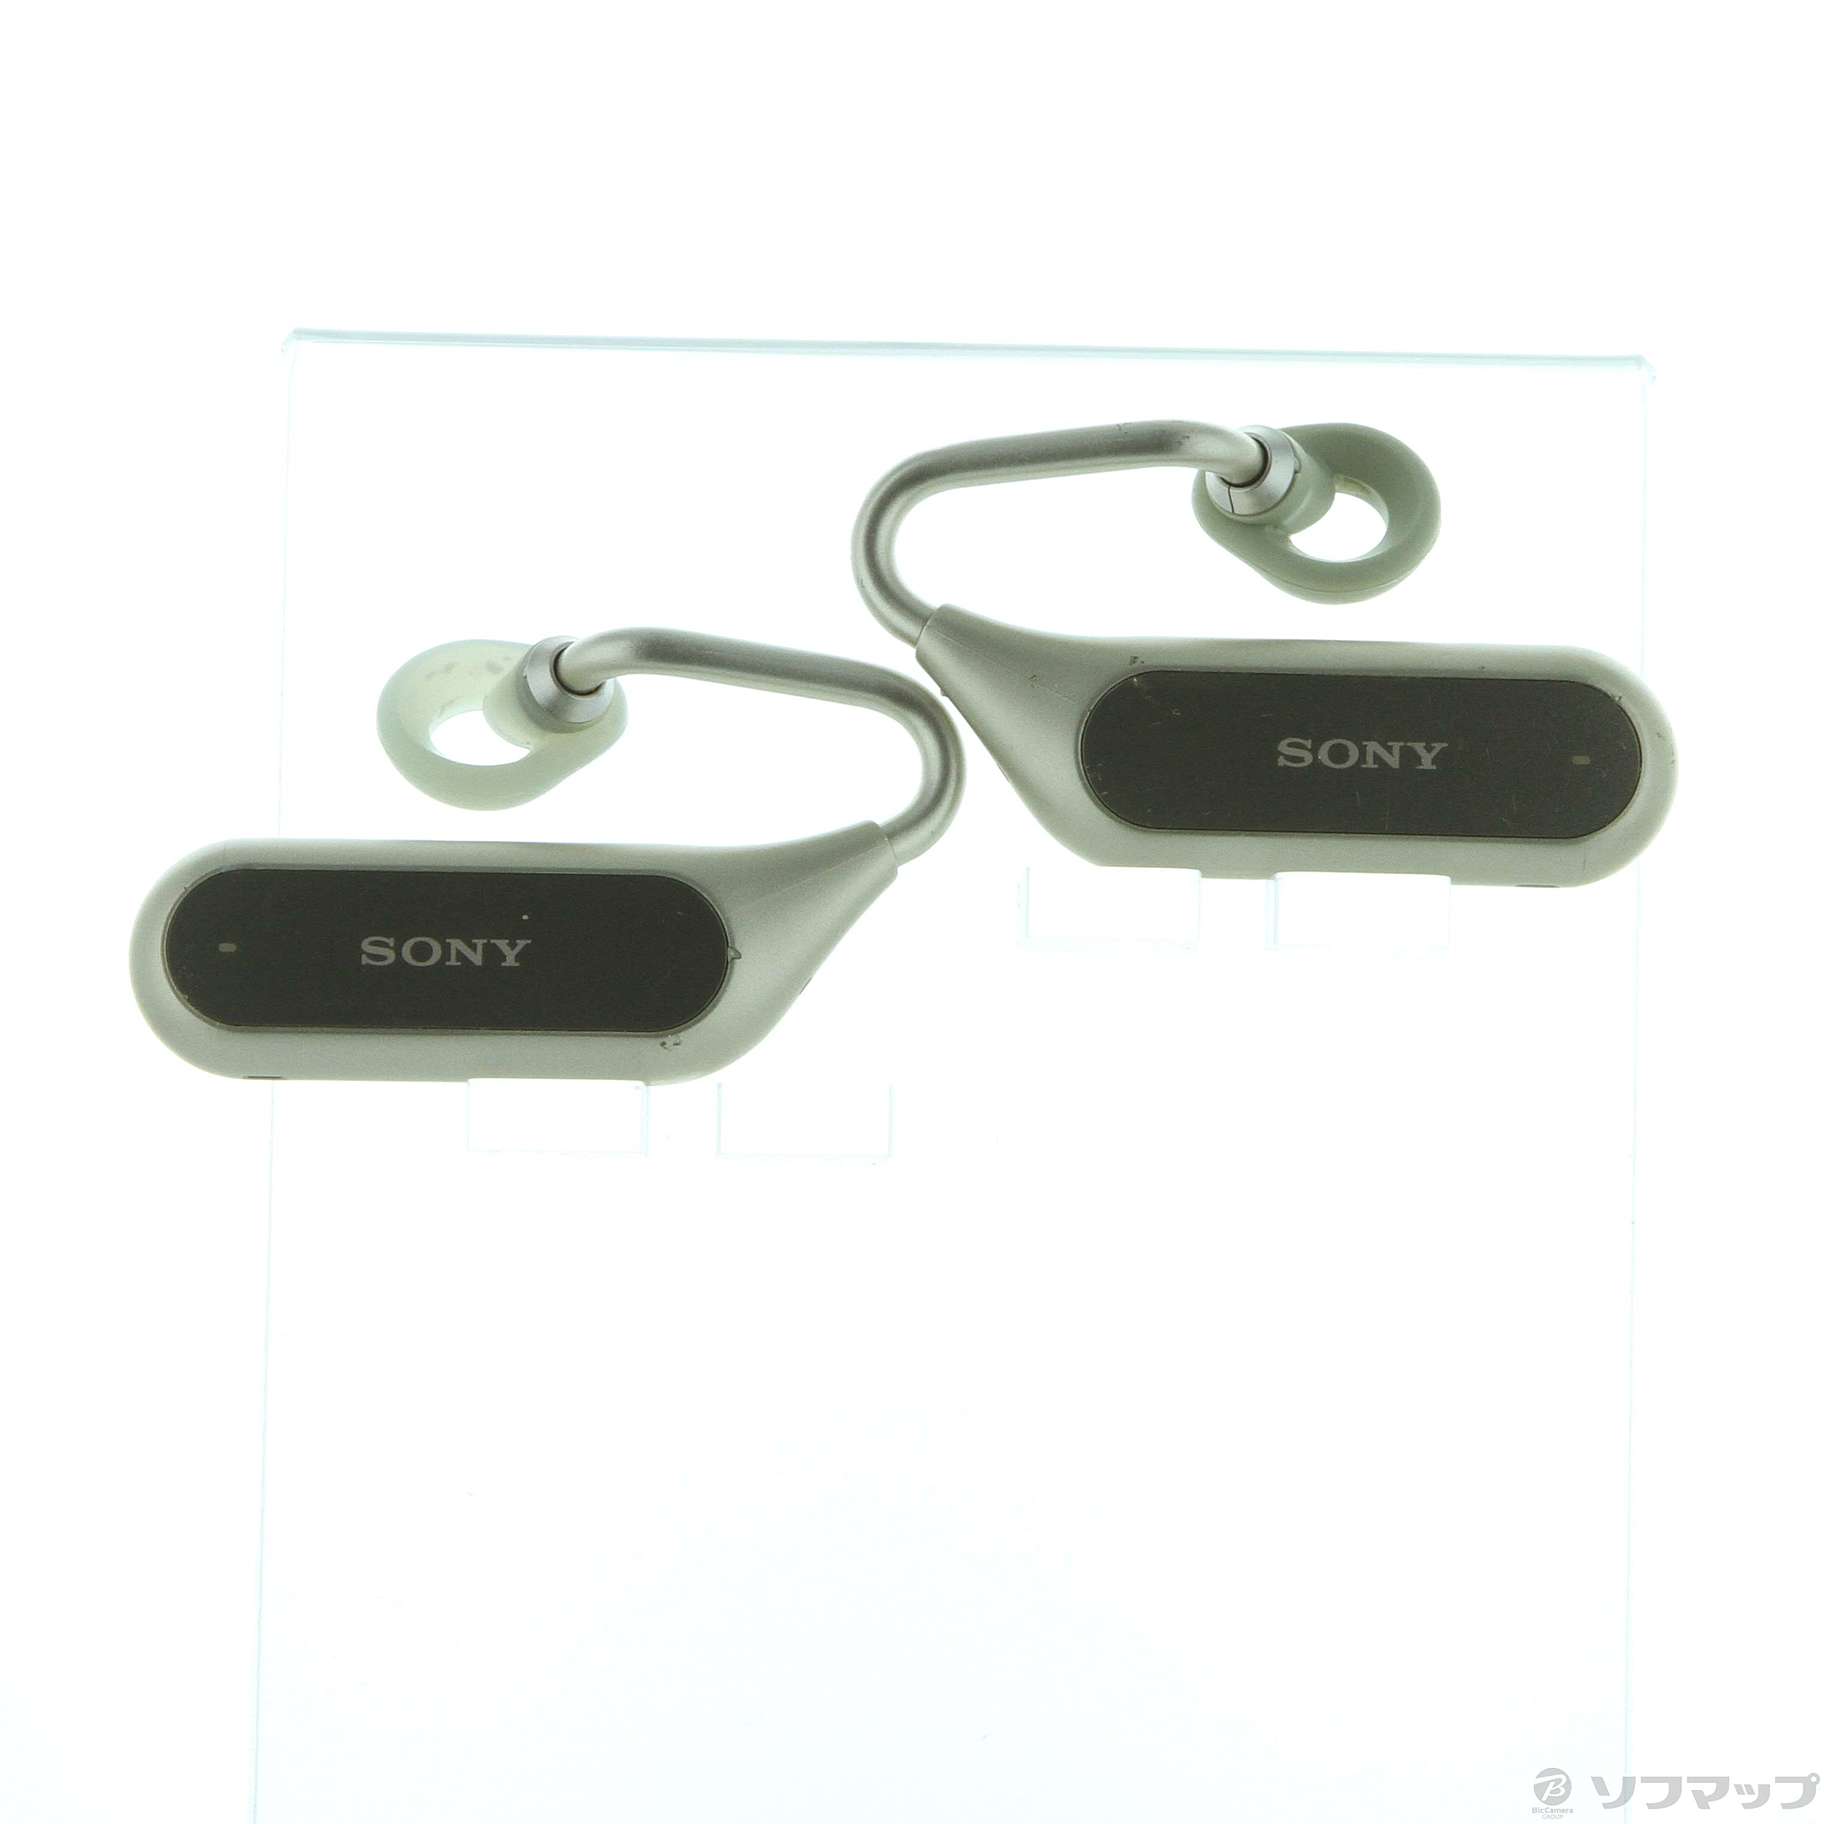 オーディオ機器ソニー XPERIA Ear Duo XEA20 Bluetooth